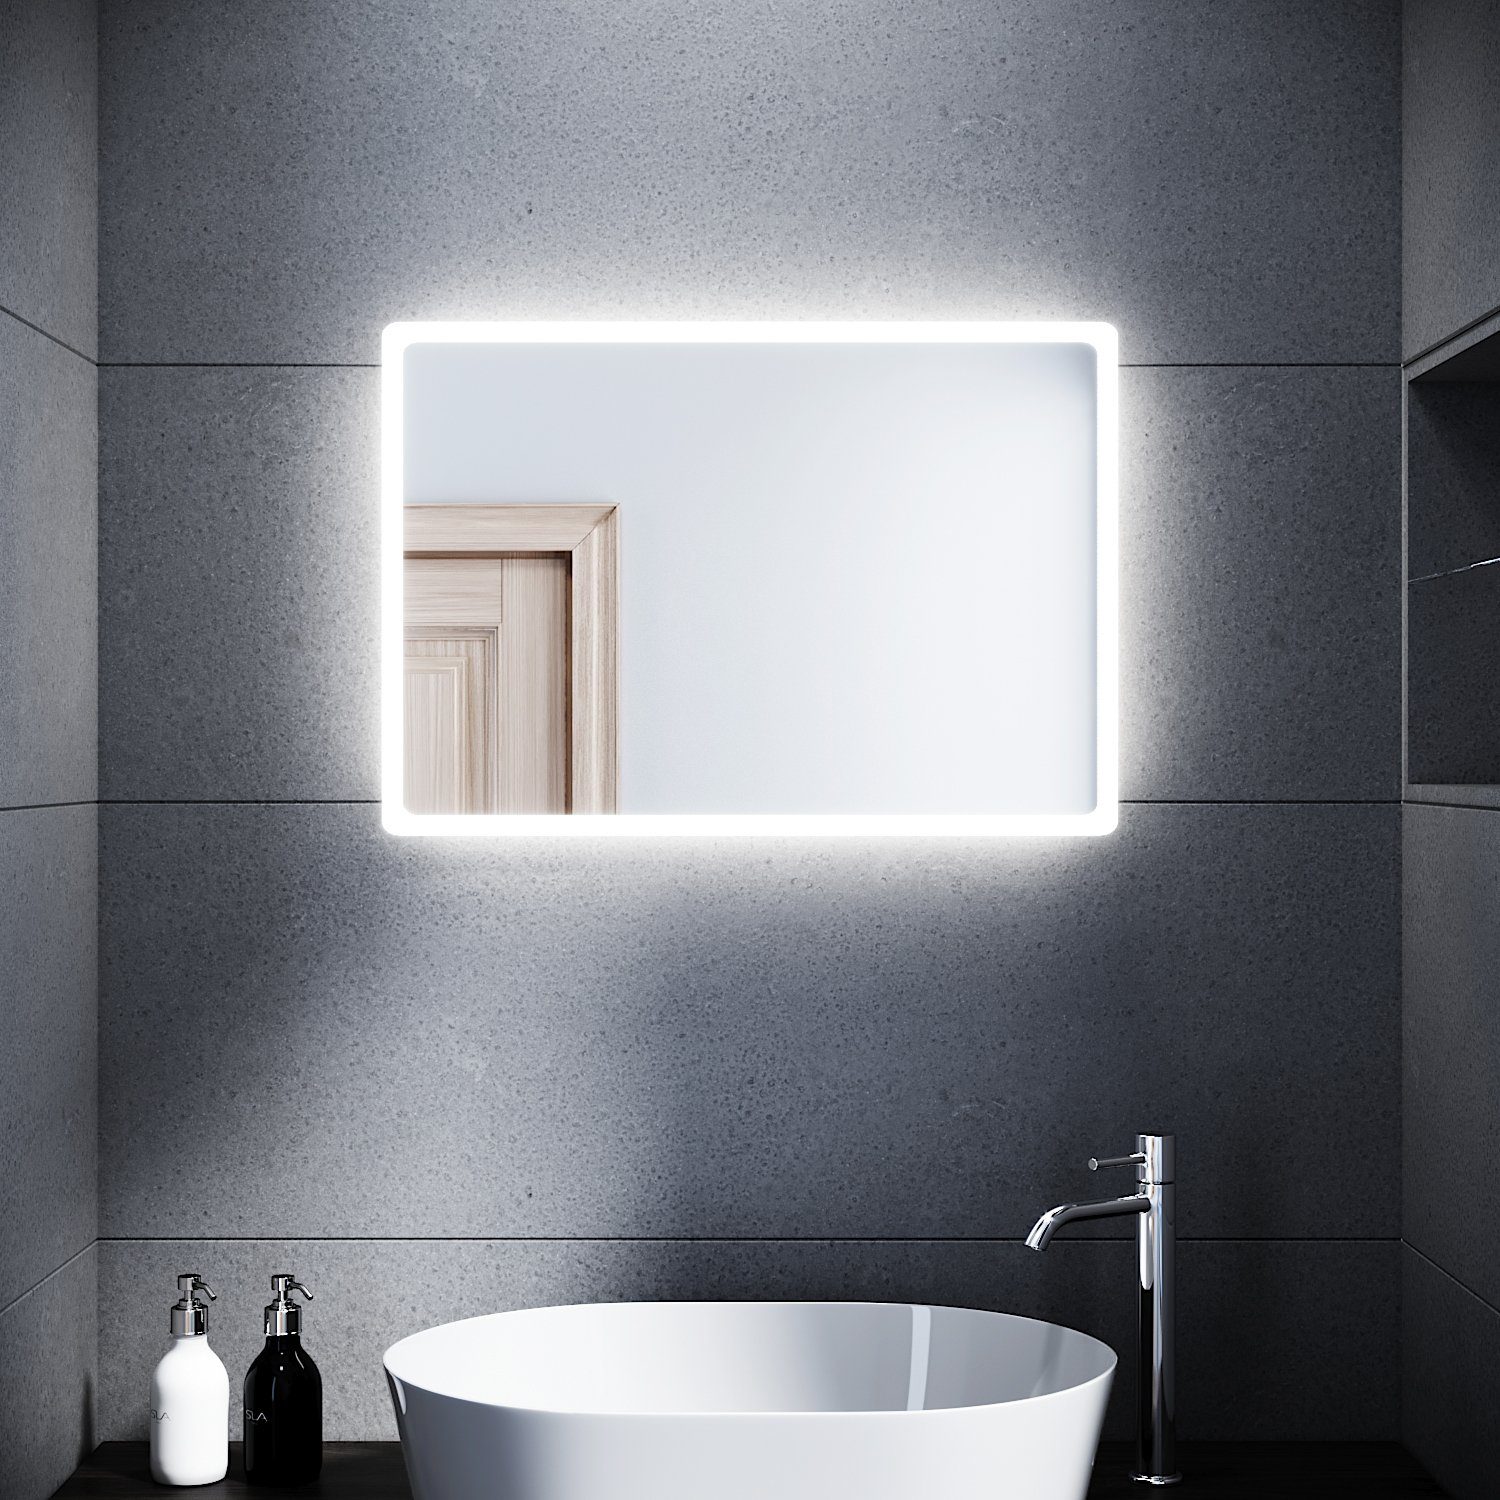 SONNI Badspiegel »Badspiegel mit Beleuchtung 80 x 60 cm Wandspiegel Spiegel«,  Badezimmerspiegel kaltweiß IP44 Badezimmer Bad Spiegel